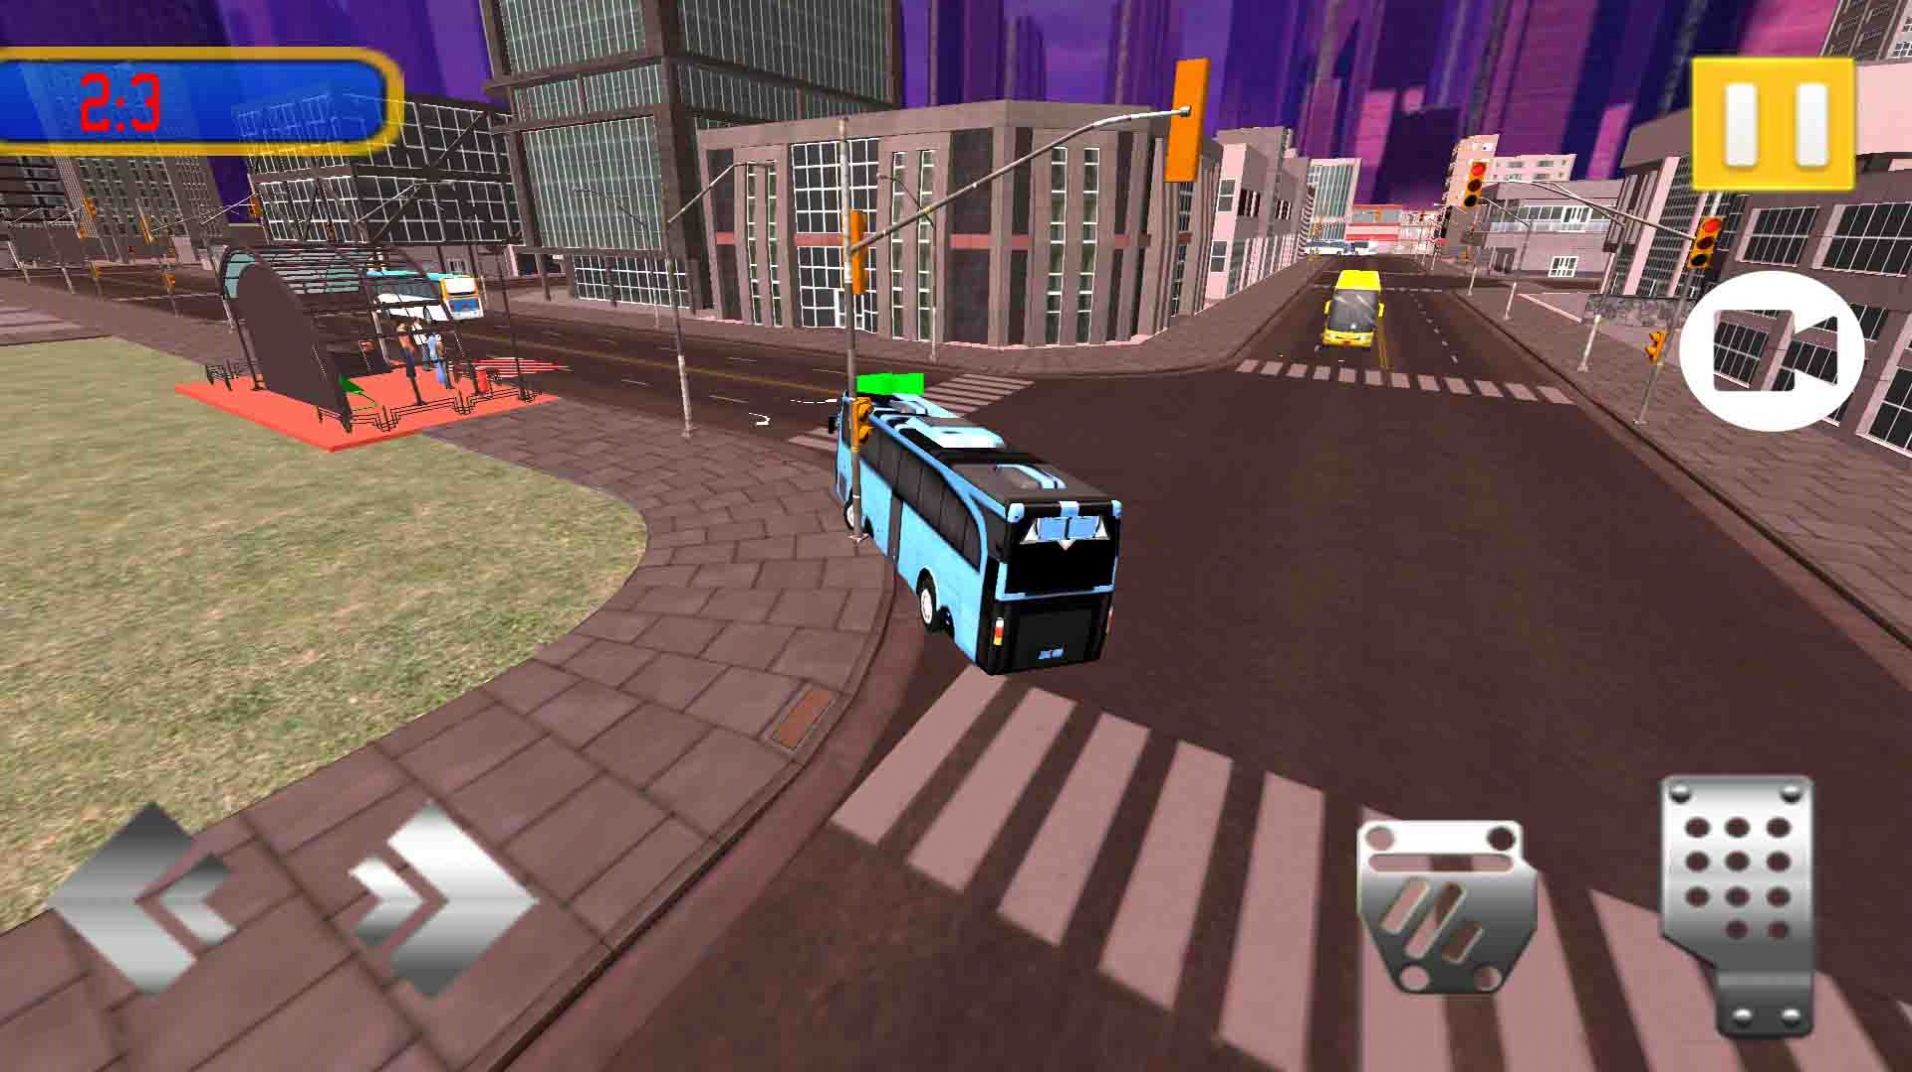 城市公交车驾驶模拟游戏截图